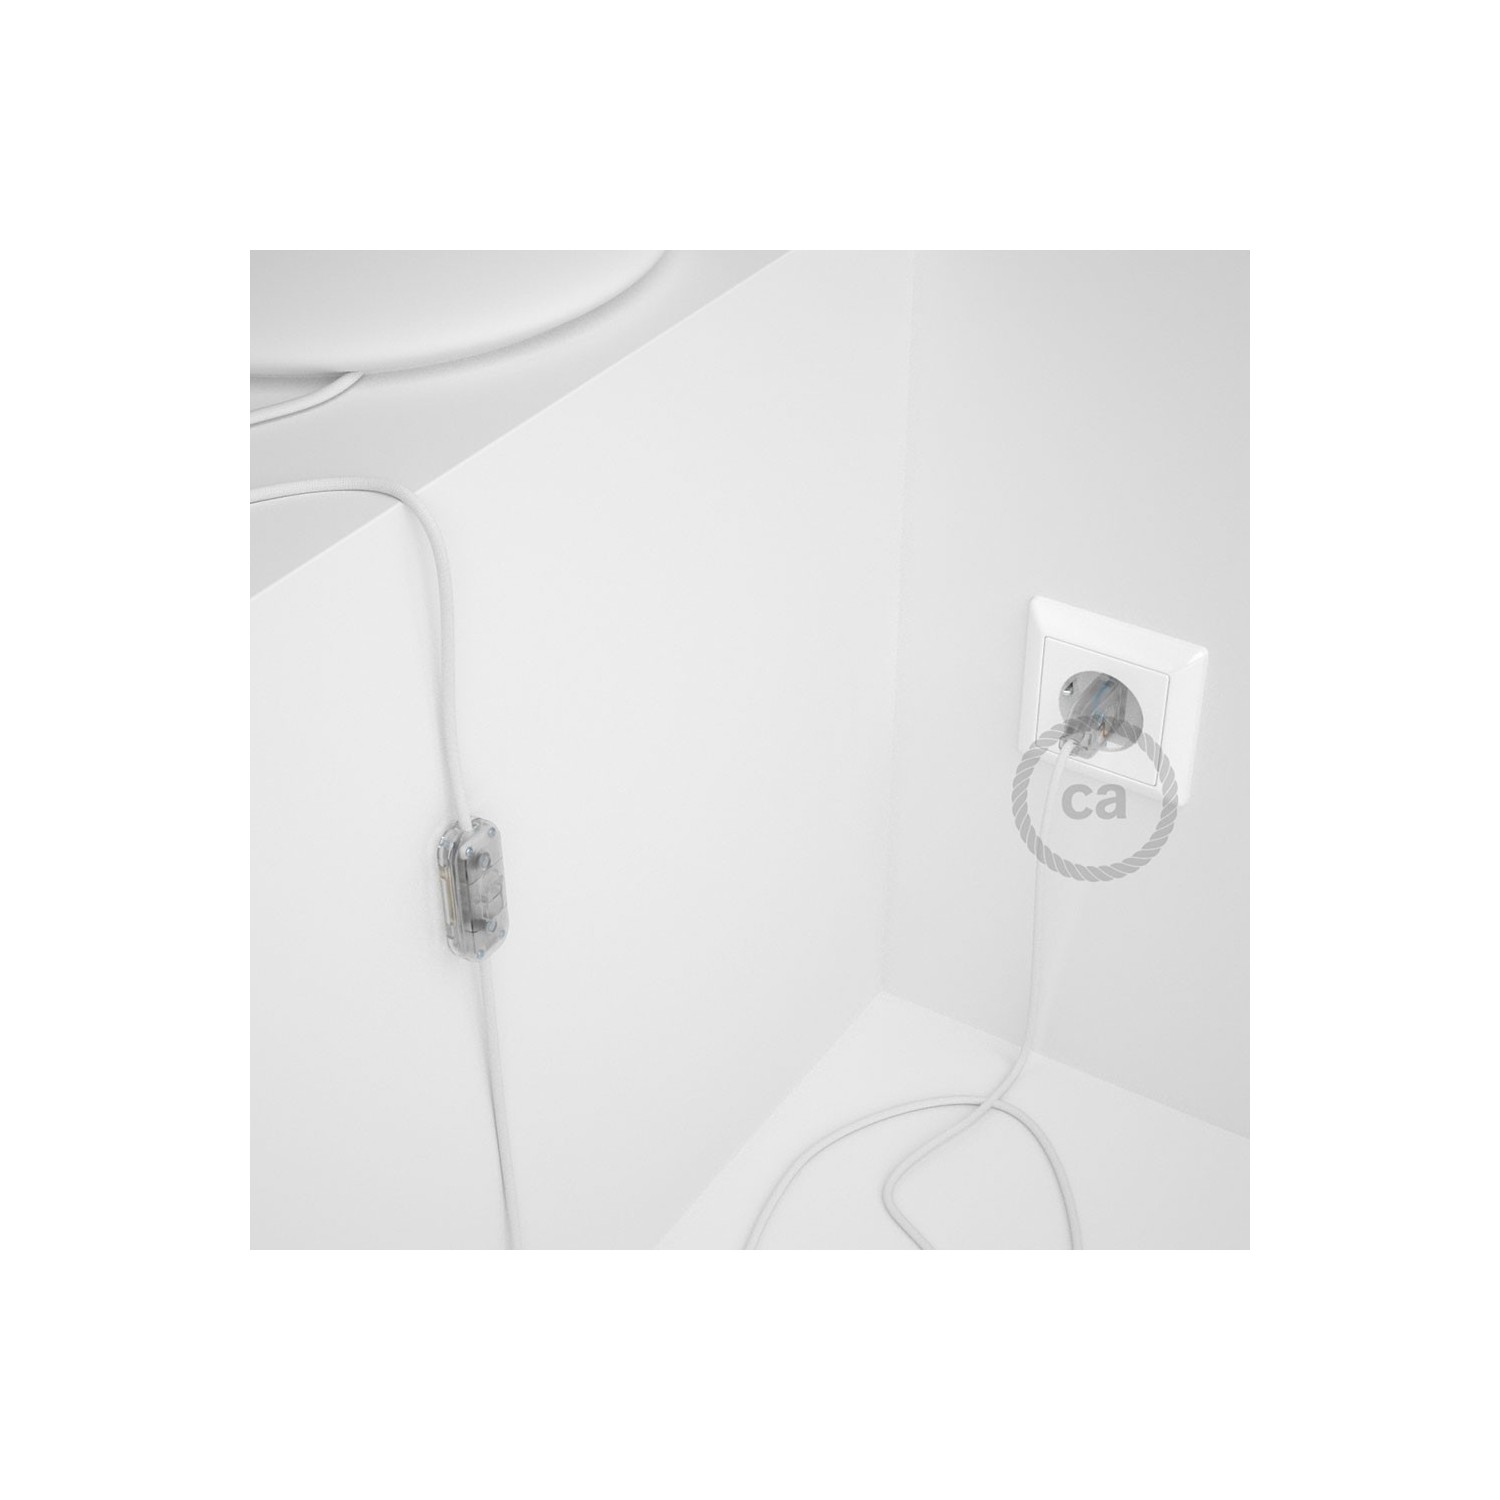 Cablaggio per lampada, cavo RM01 Effetto Seta Bianco 1,80 m. Scegli il colore dell'interruttore e della spina.